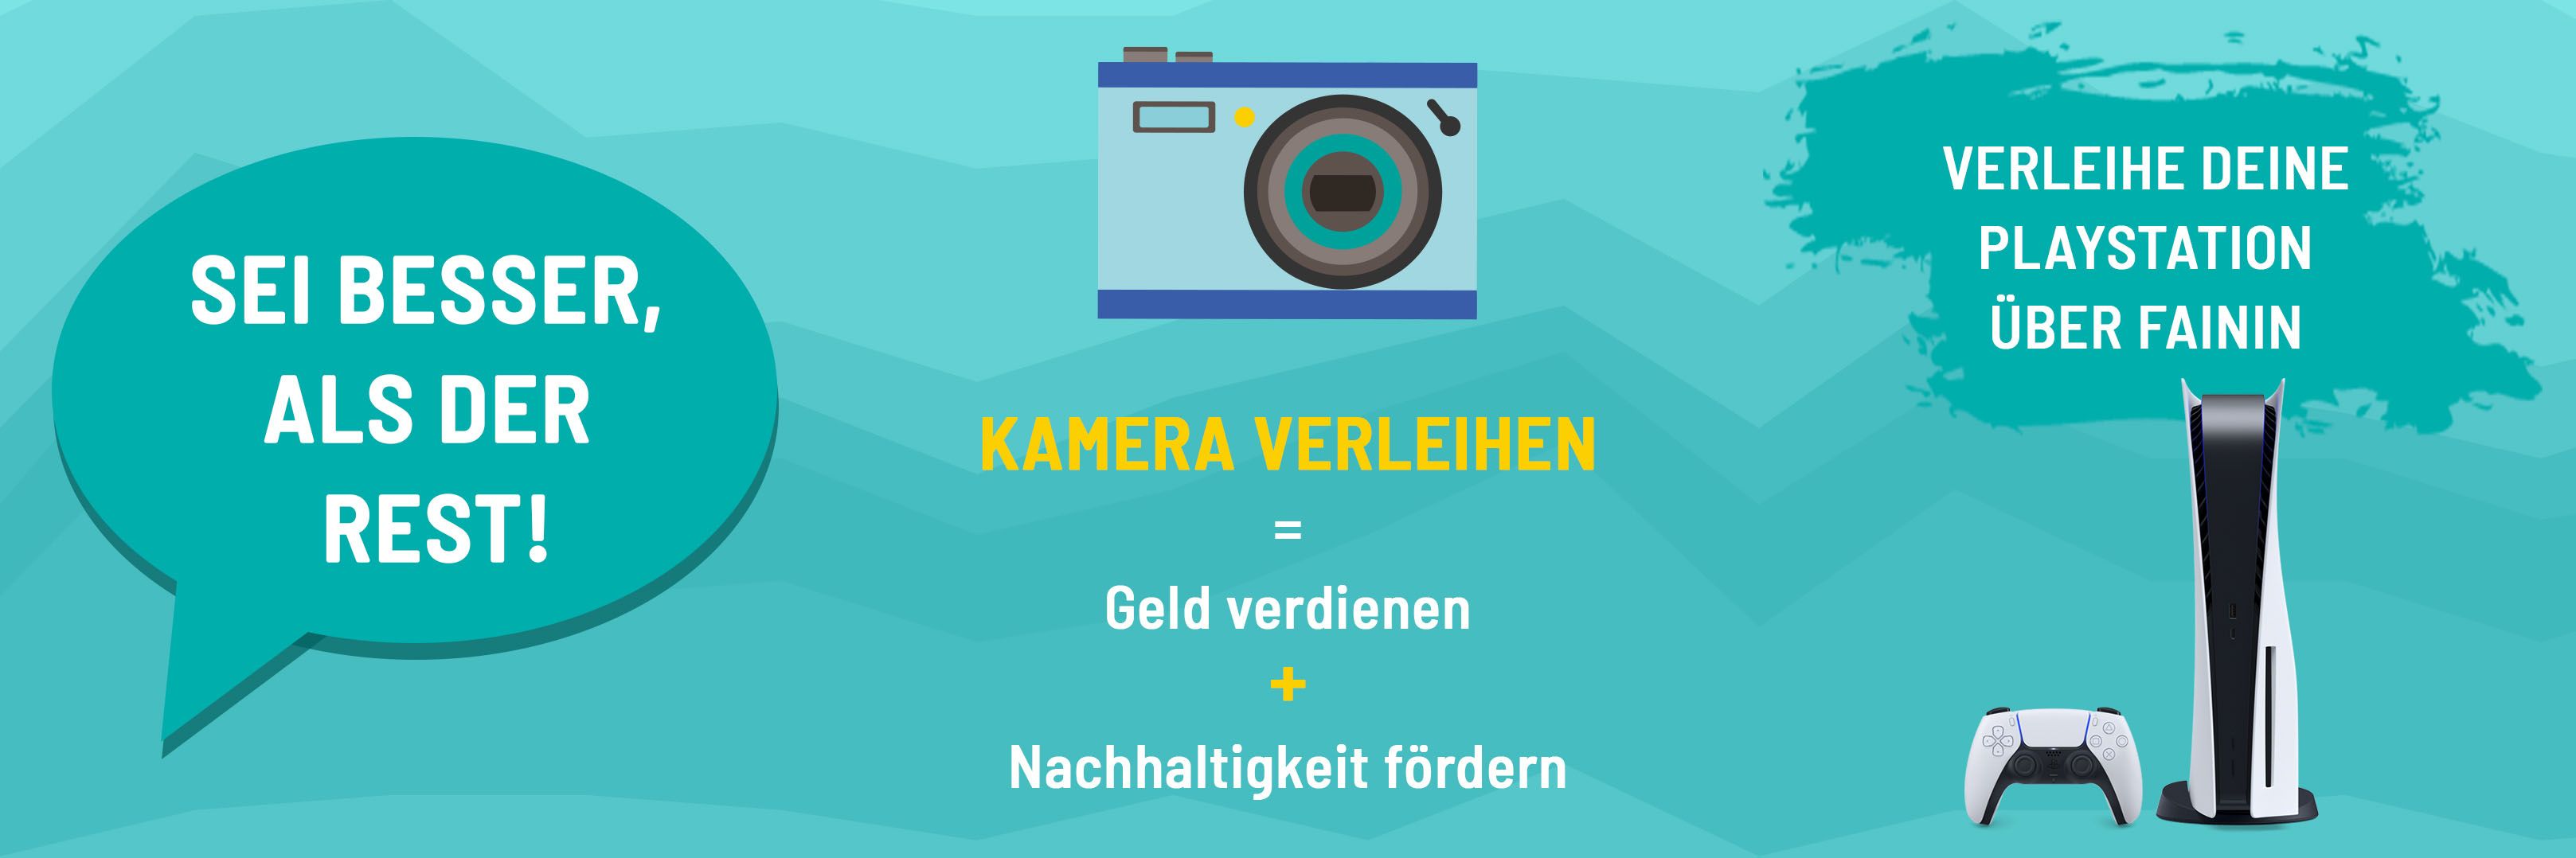 Der neueste Verleih-Trend in den Städten Deutschlands: Kamera Verleihen